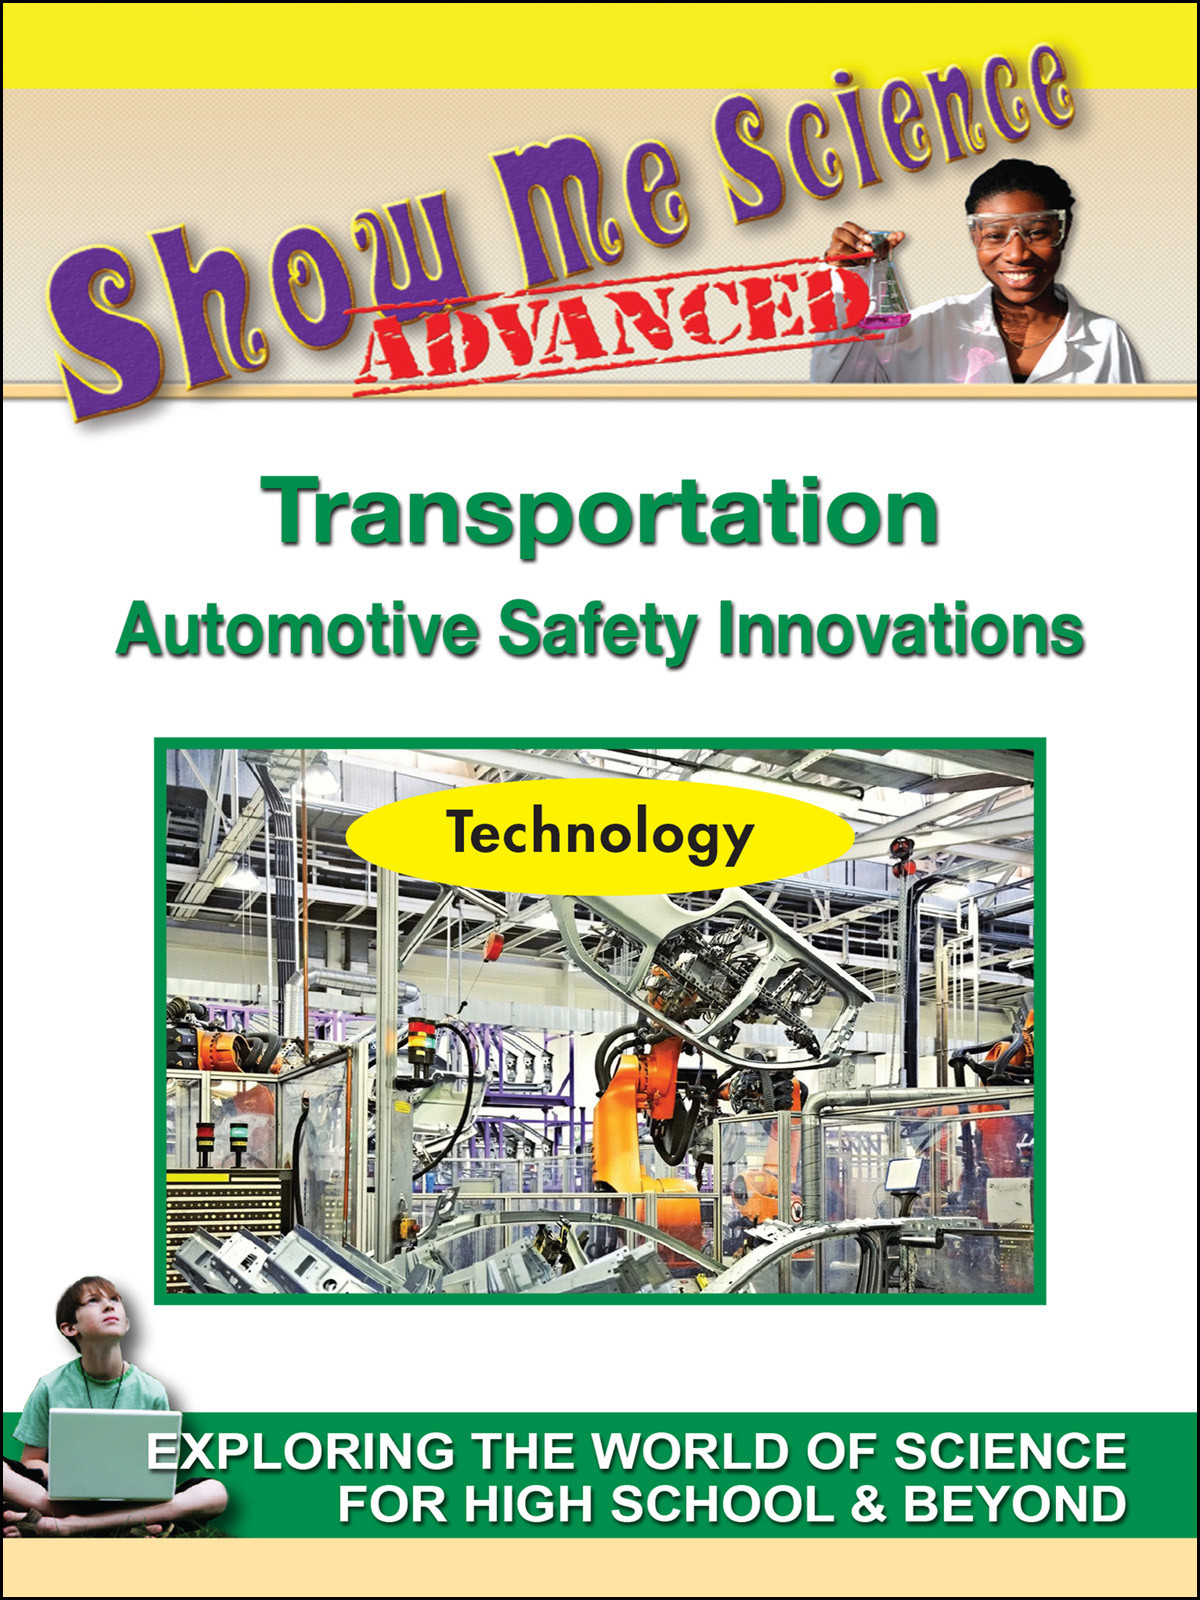 K4606 - Transportation Automotive Safety Innovations